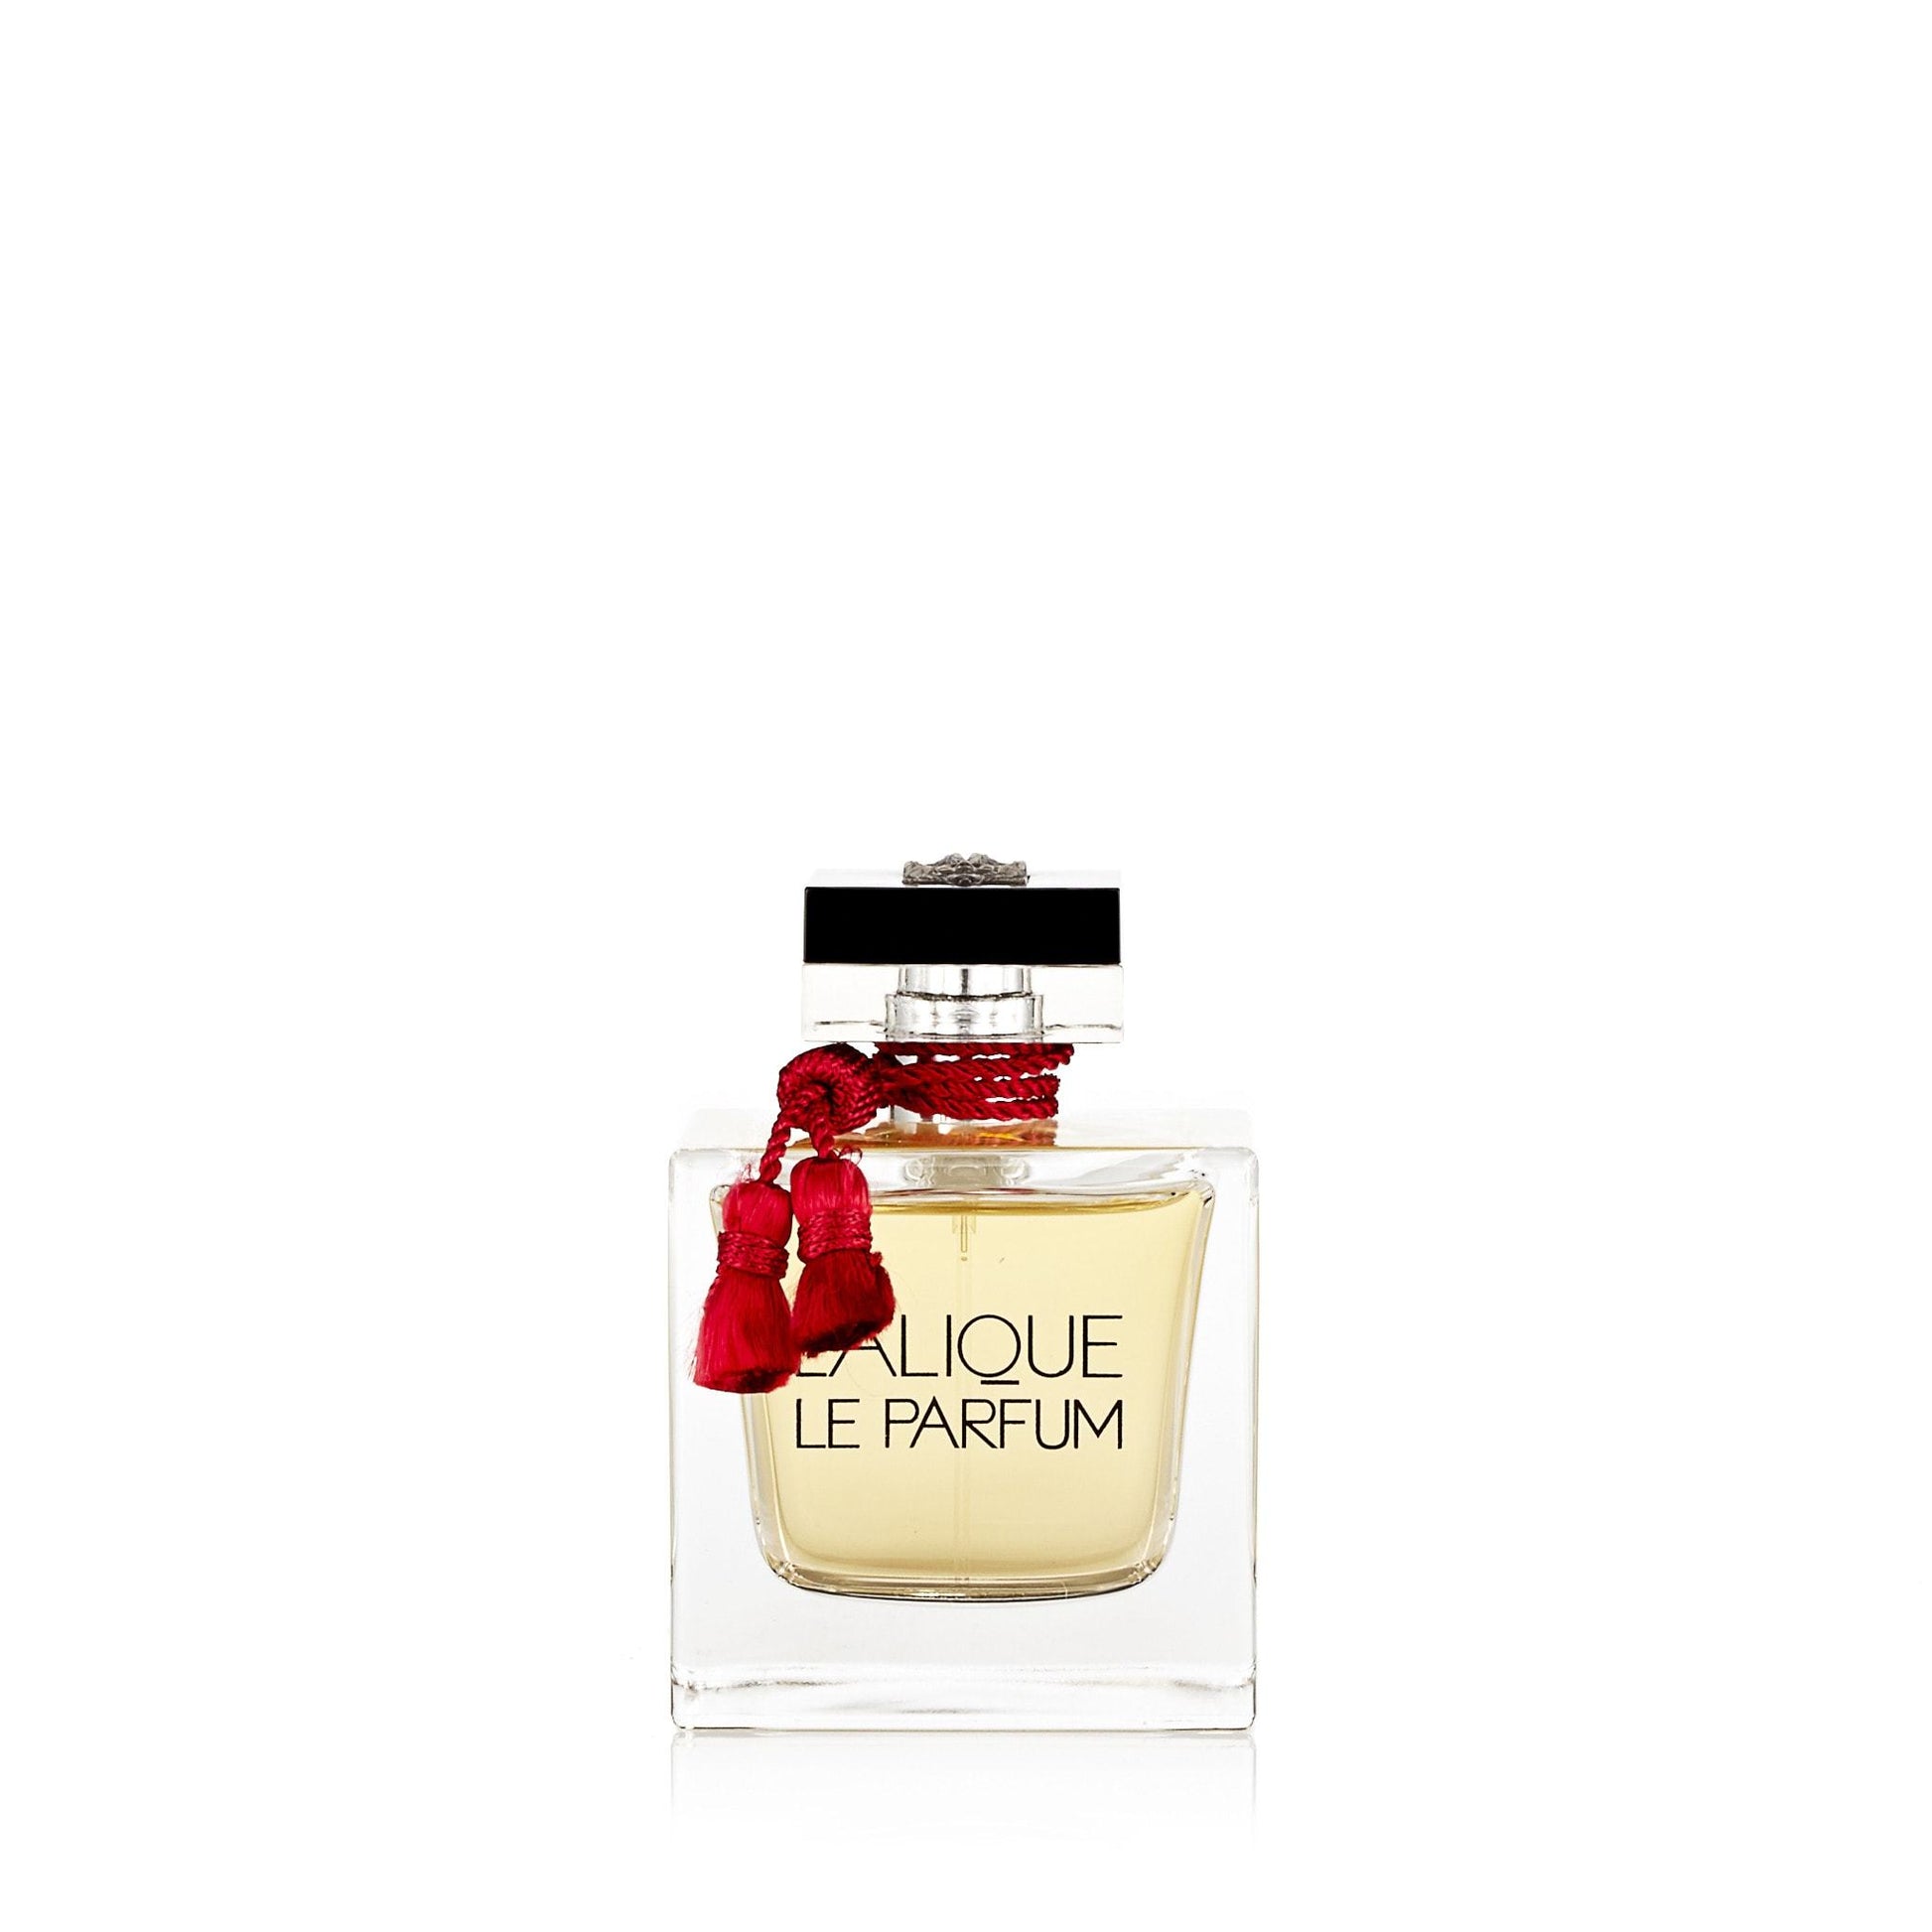 La Parfum Eau de Parfum Spray for Women by Lalique, Product image 1